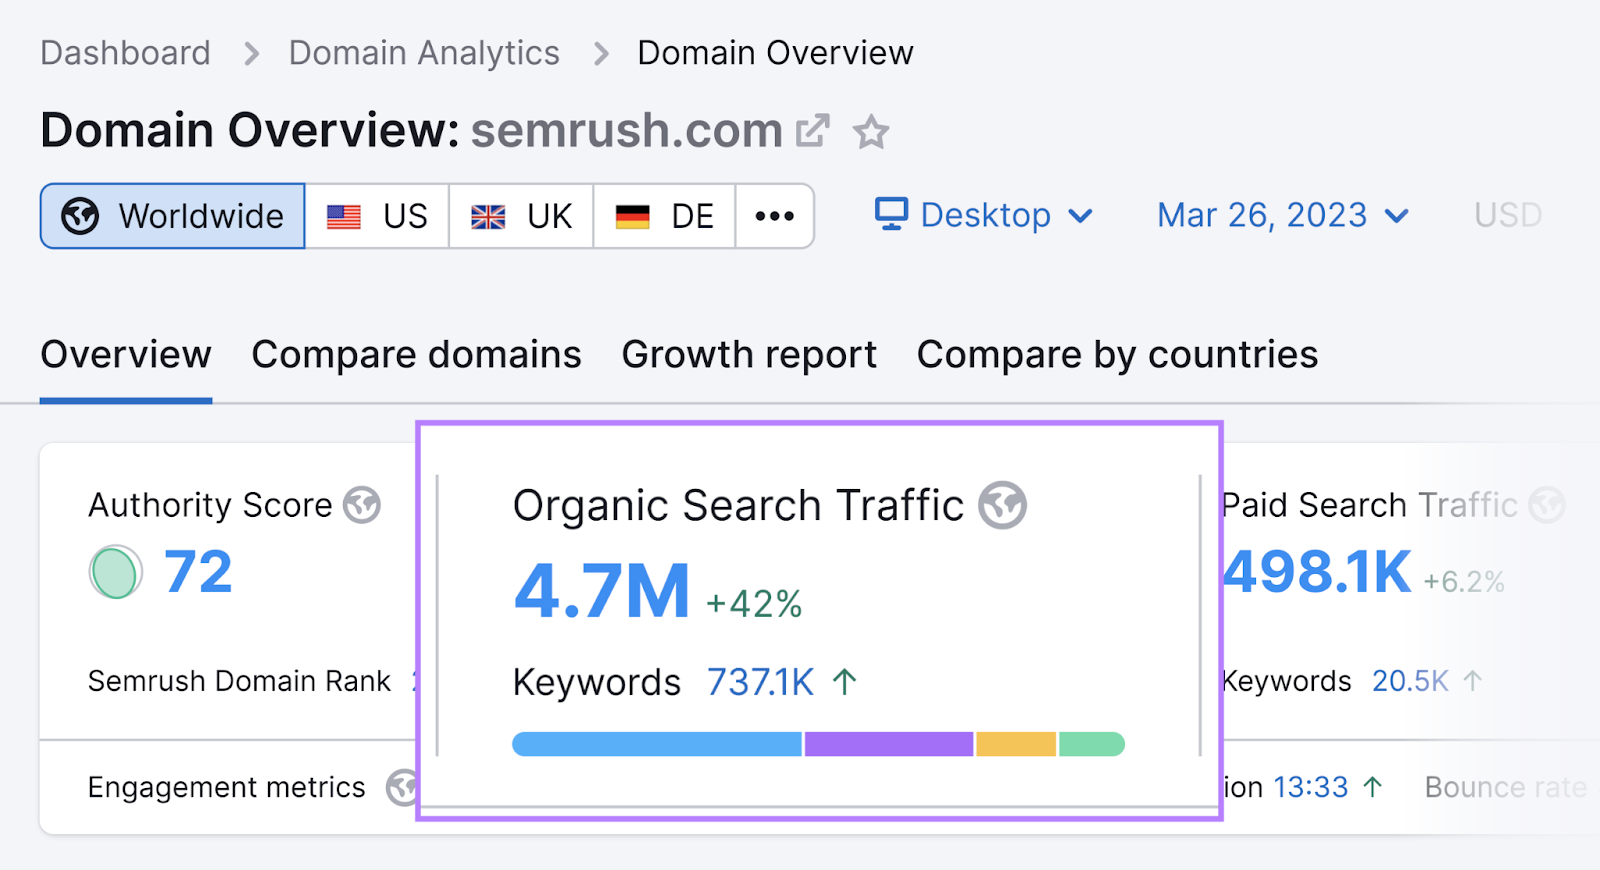 Semrush’s Domain Overview